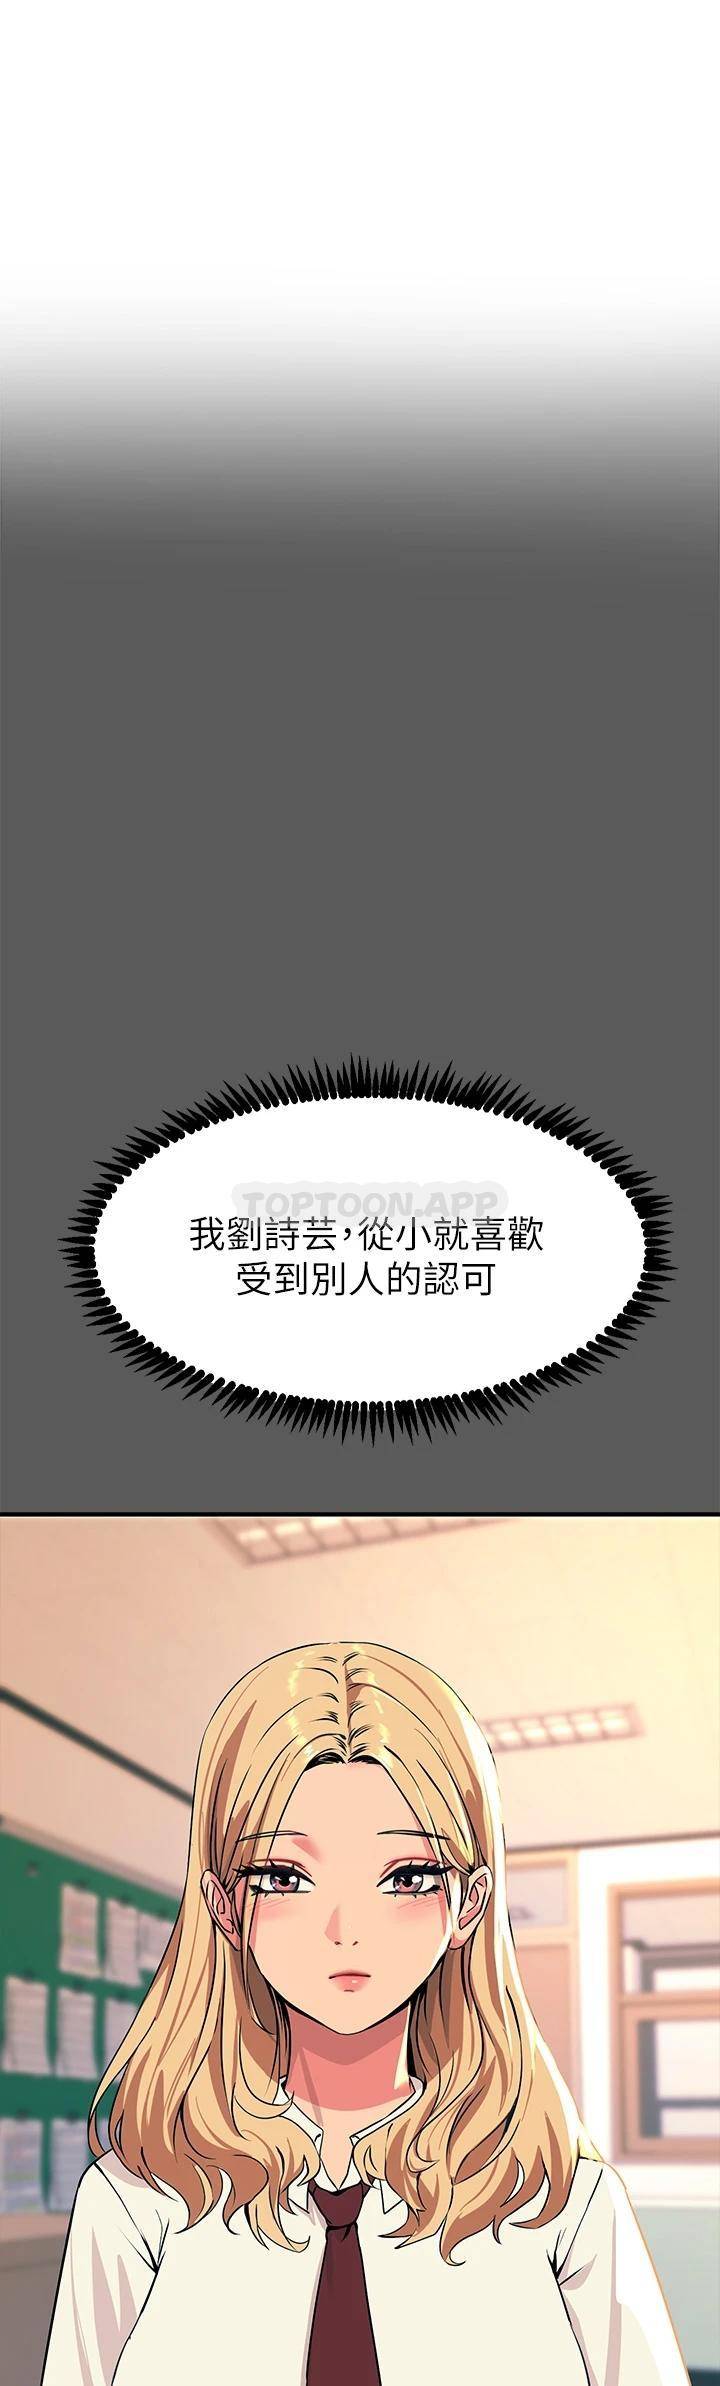 韩国污漫画 觸電大師 第13话 伺机反击!一碰就高潮 5